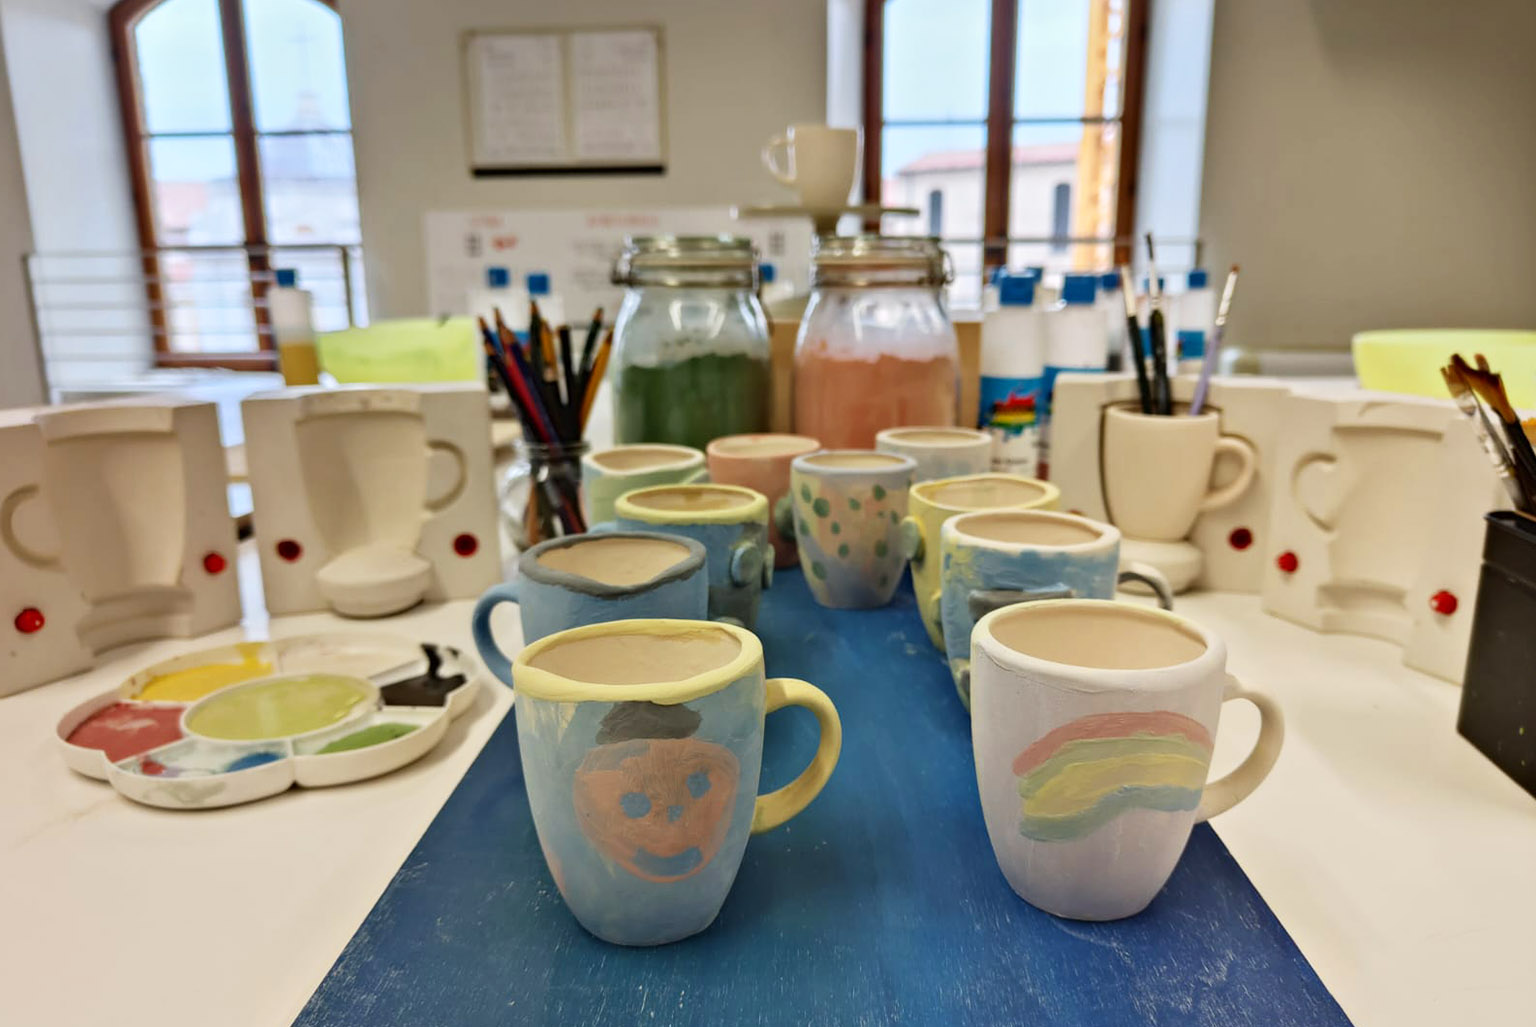 Tavolo del laboratorio di ceramica con smalti, stampi, pennelli e alcune tazze colorate in fase di lavorazione.